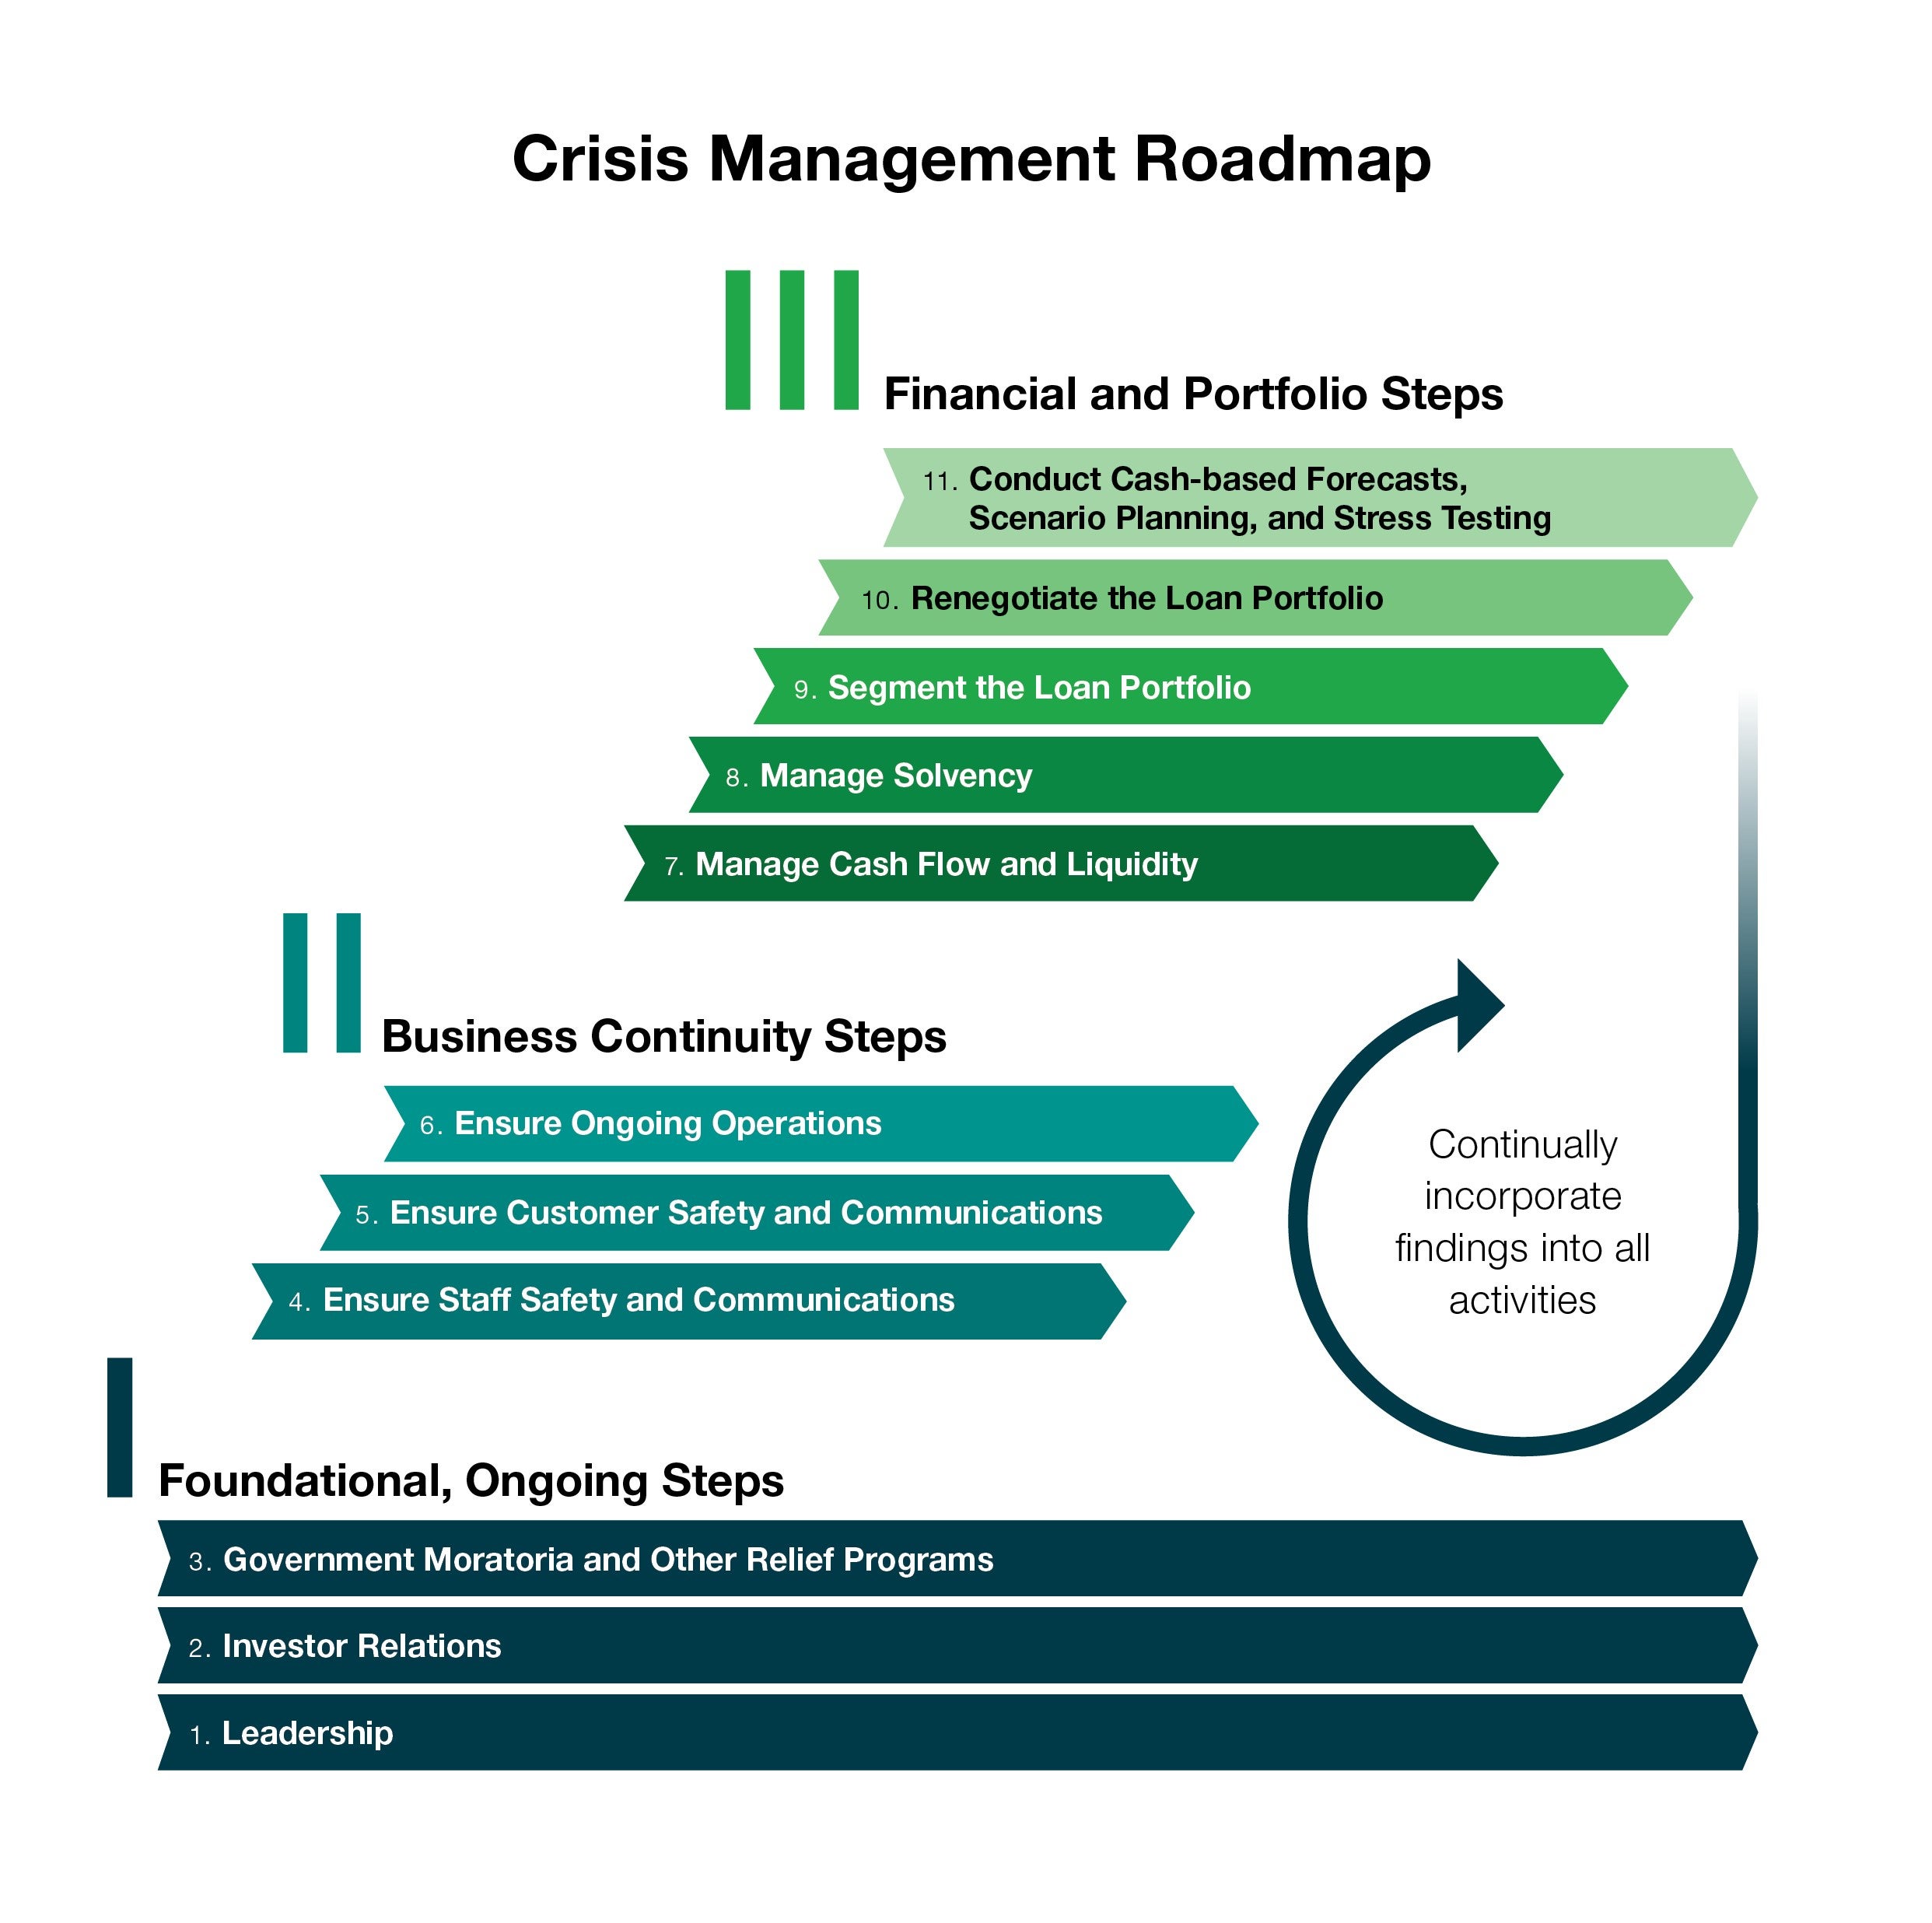 Crisis Roadmap Image